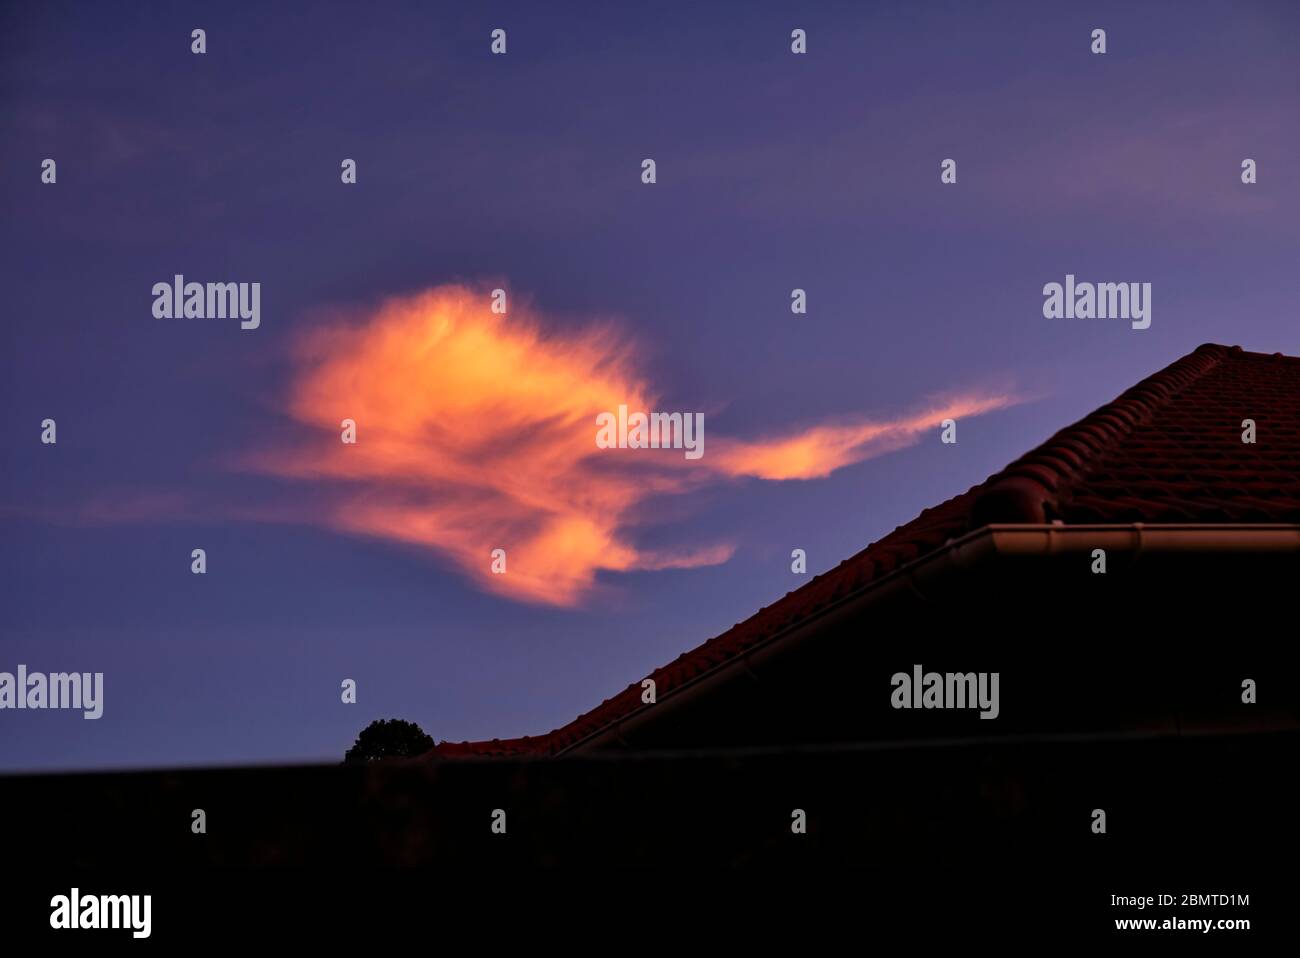 El cielo dramático por la noche con el sol que pone creando un efecto de nube ardiente naranja dramático Foto de stock